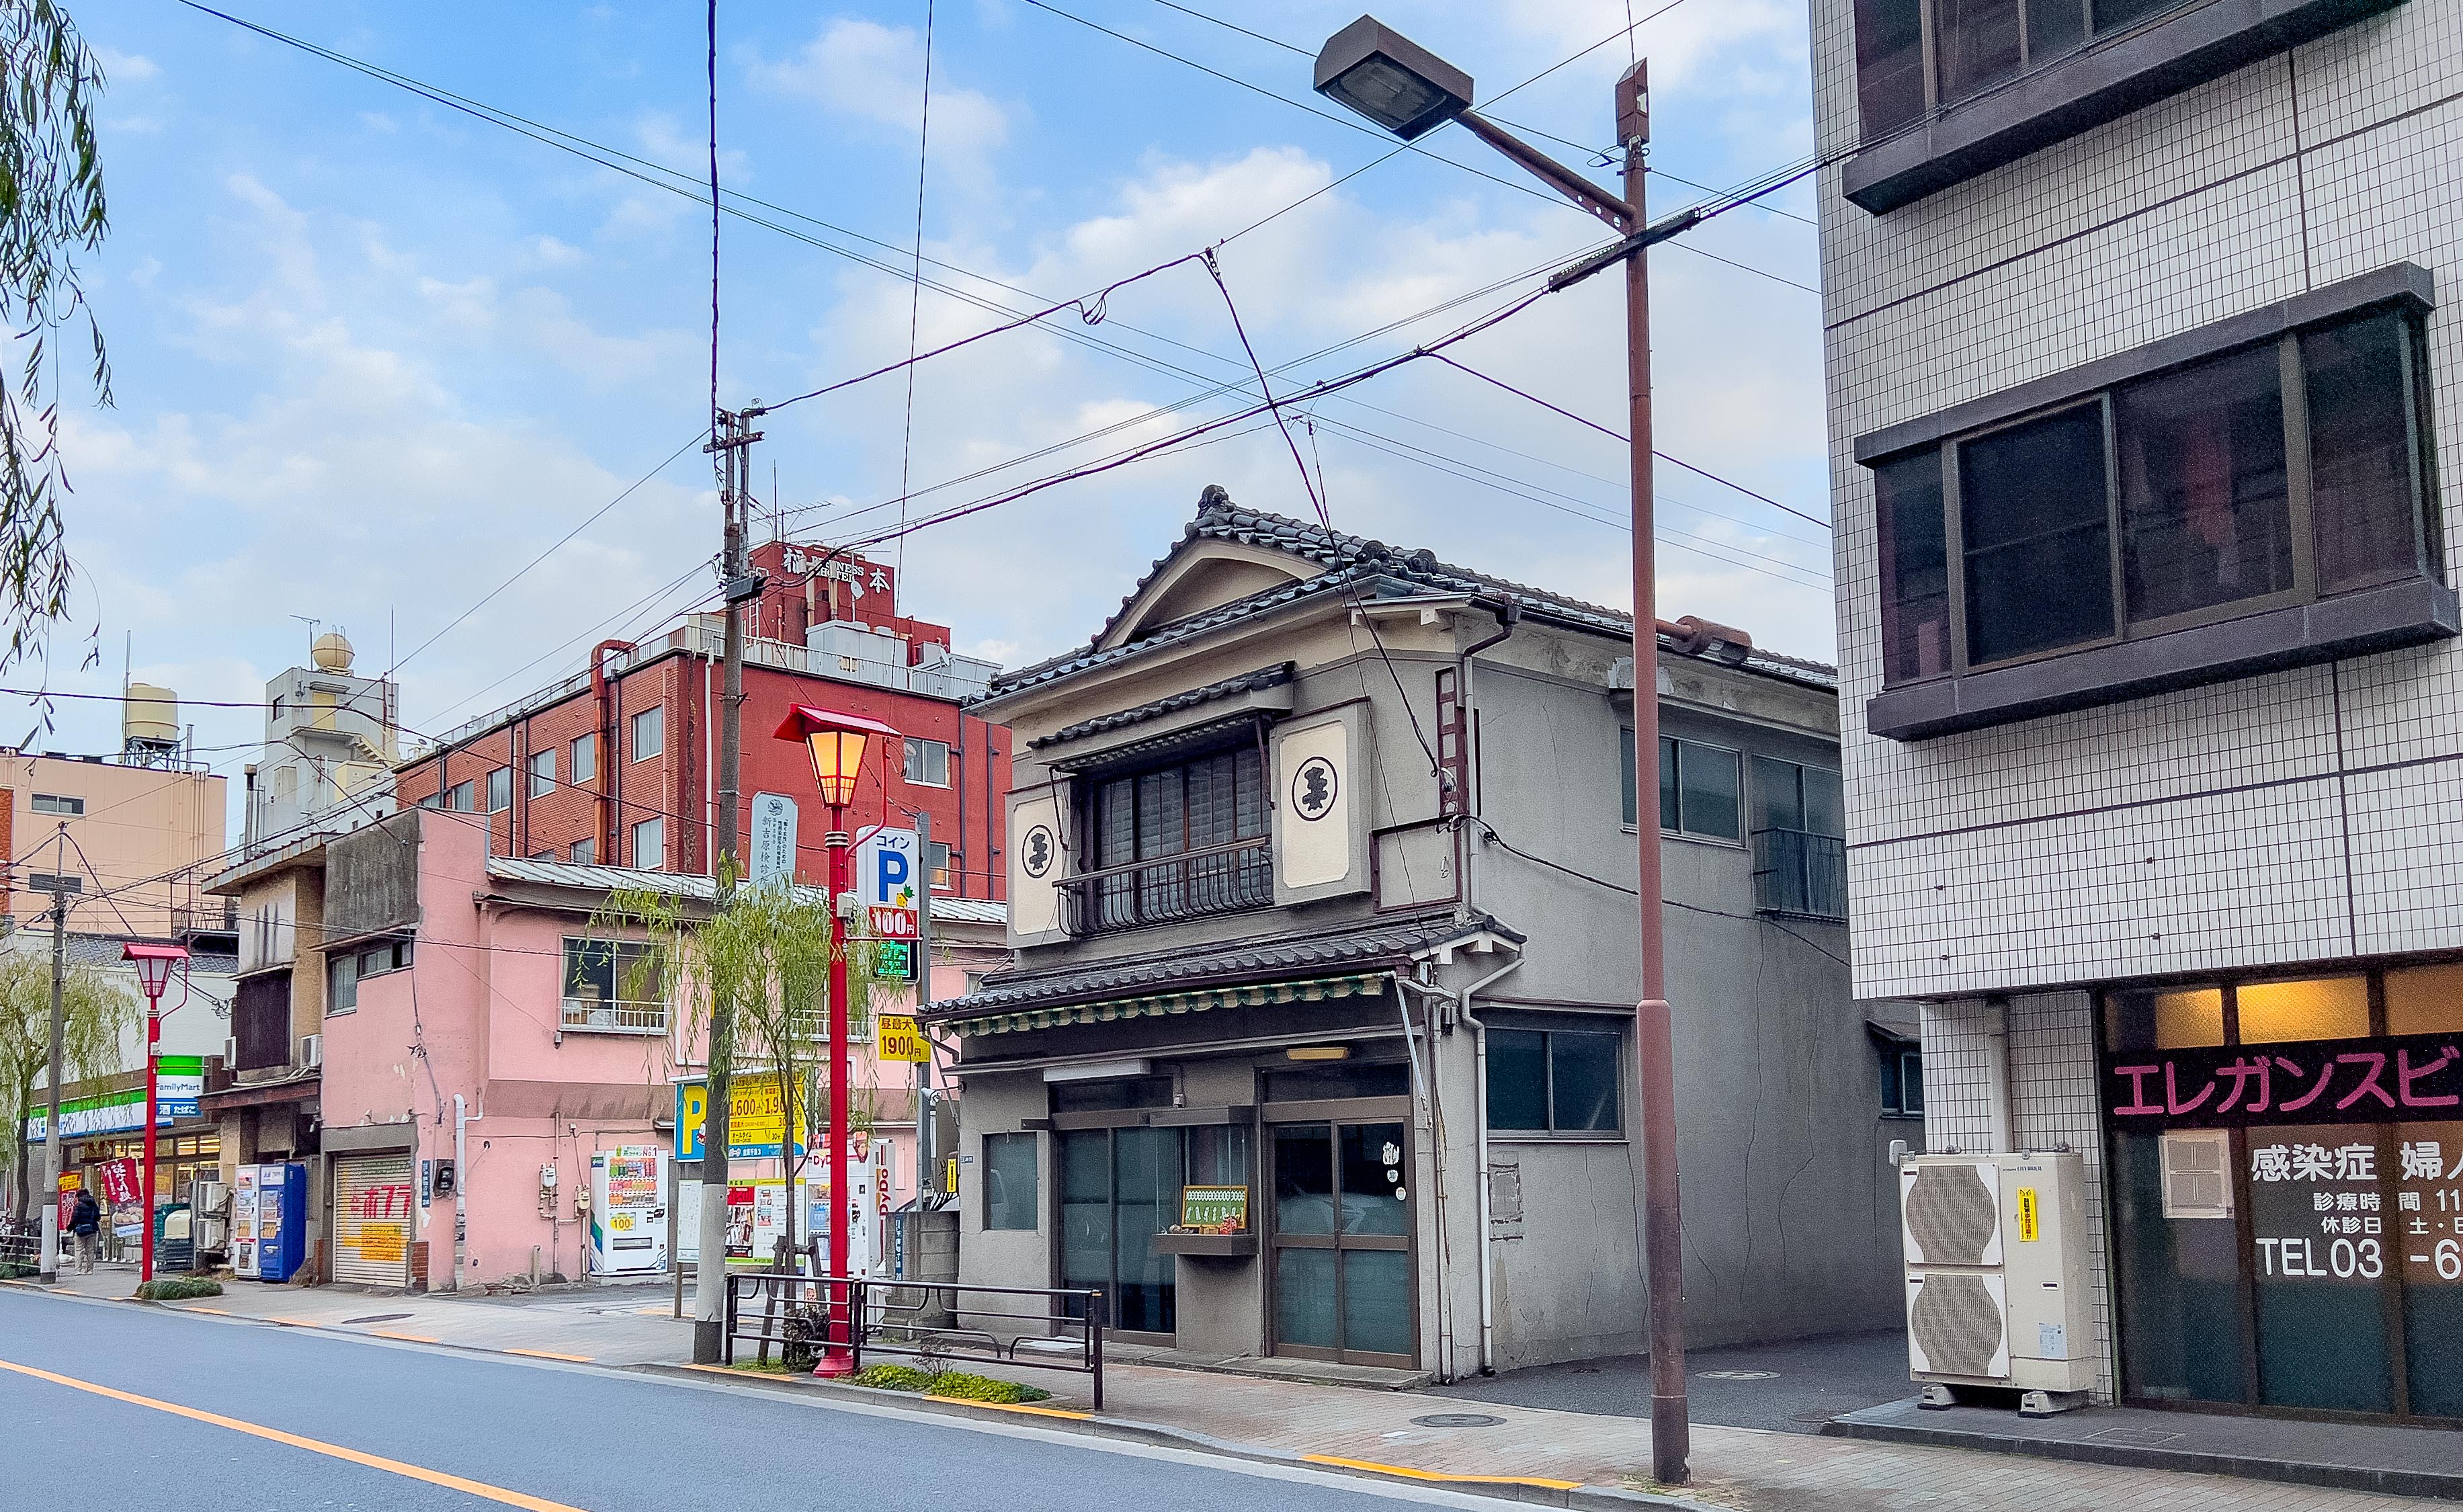 A restored building in Tokyo’s Taito Ward